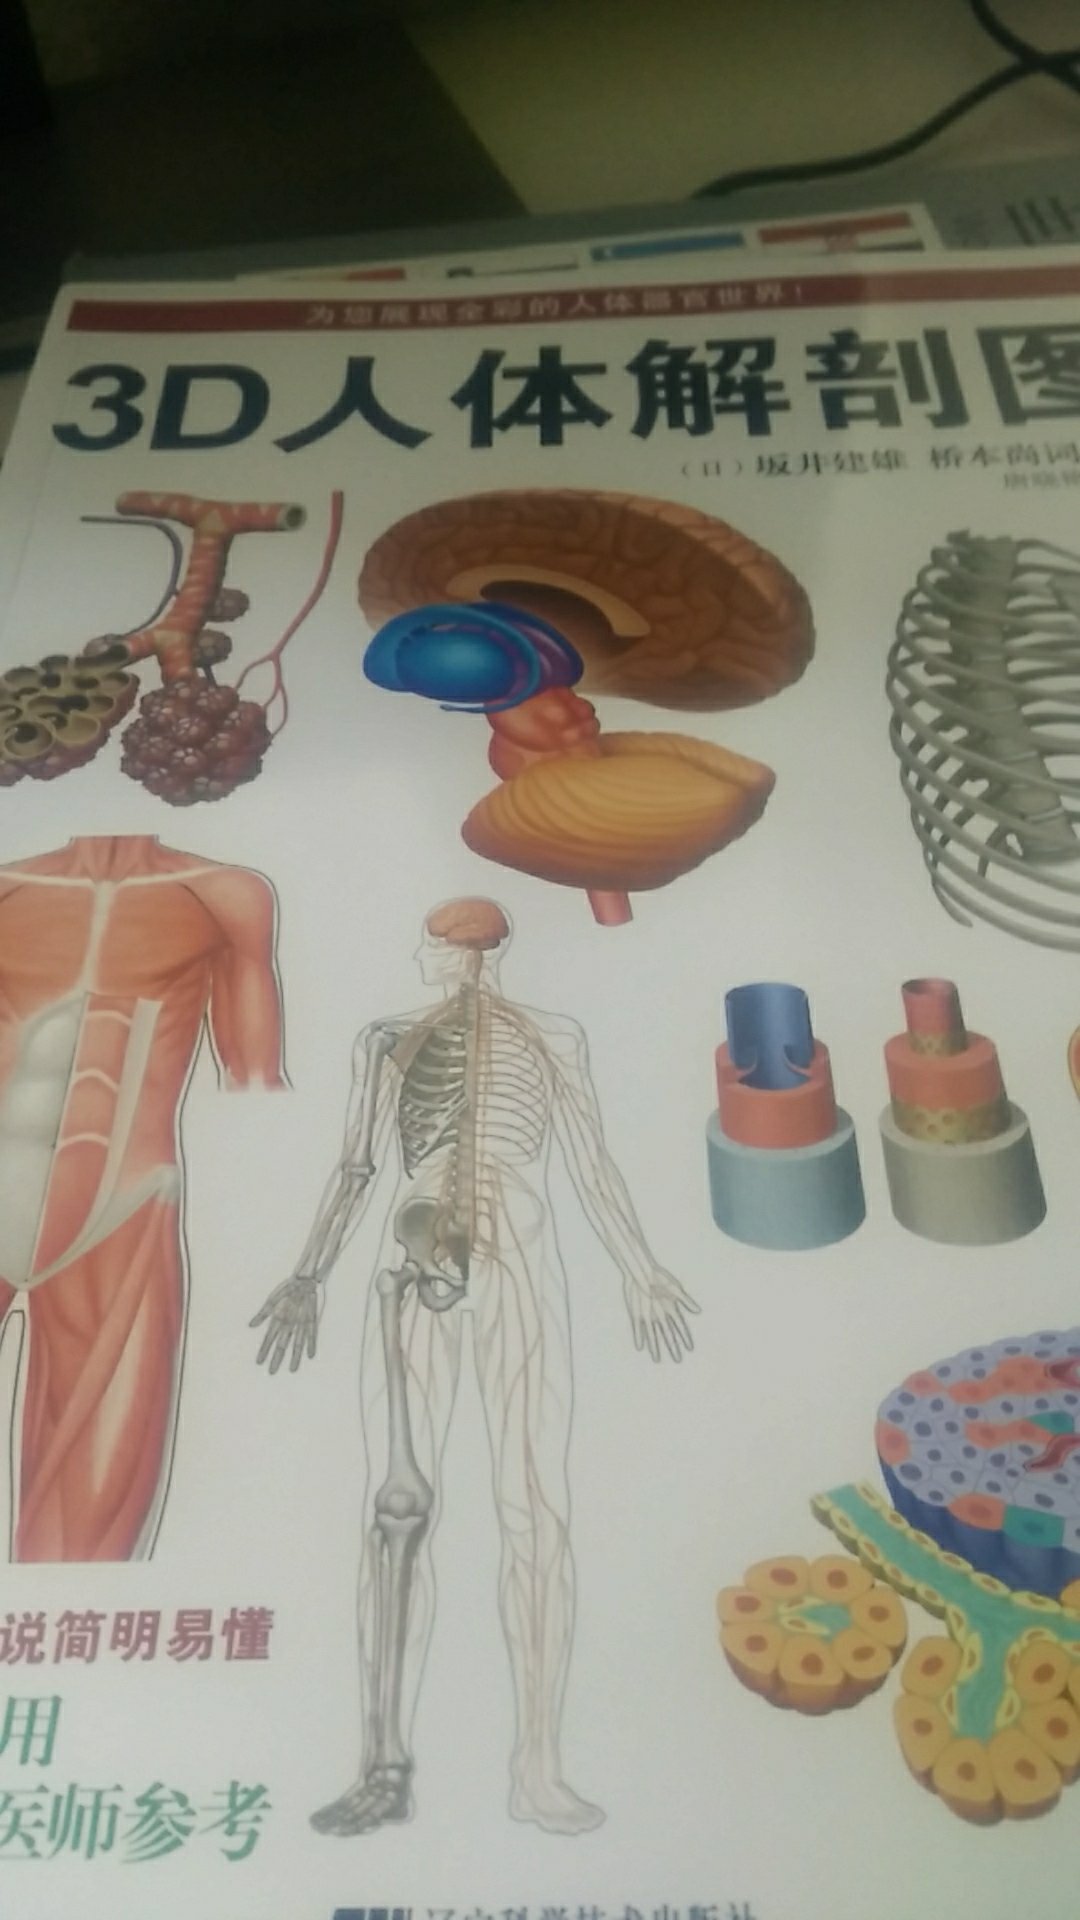 很厚的图册 方便了解人身体的各种构造